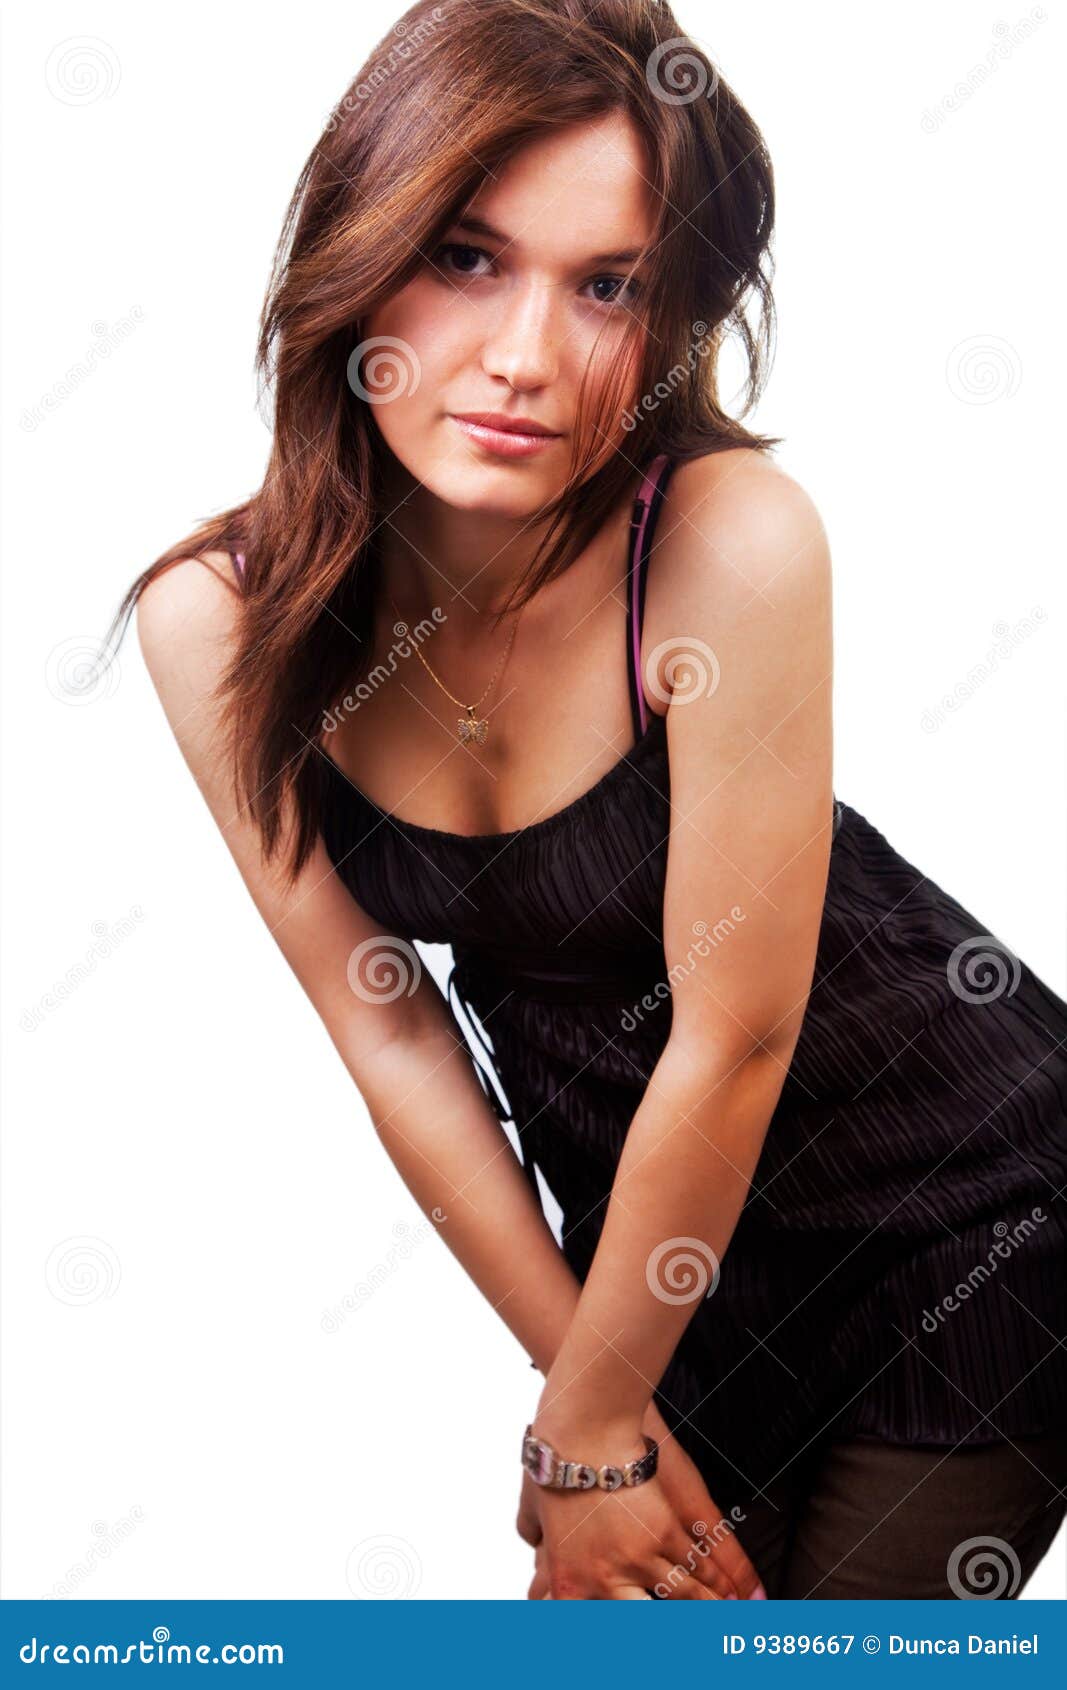 Elegant Sensual Woman Isolated on White Stock Image - Image of lady ...